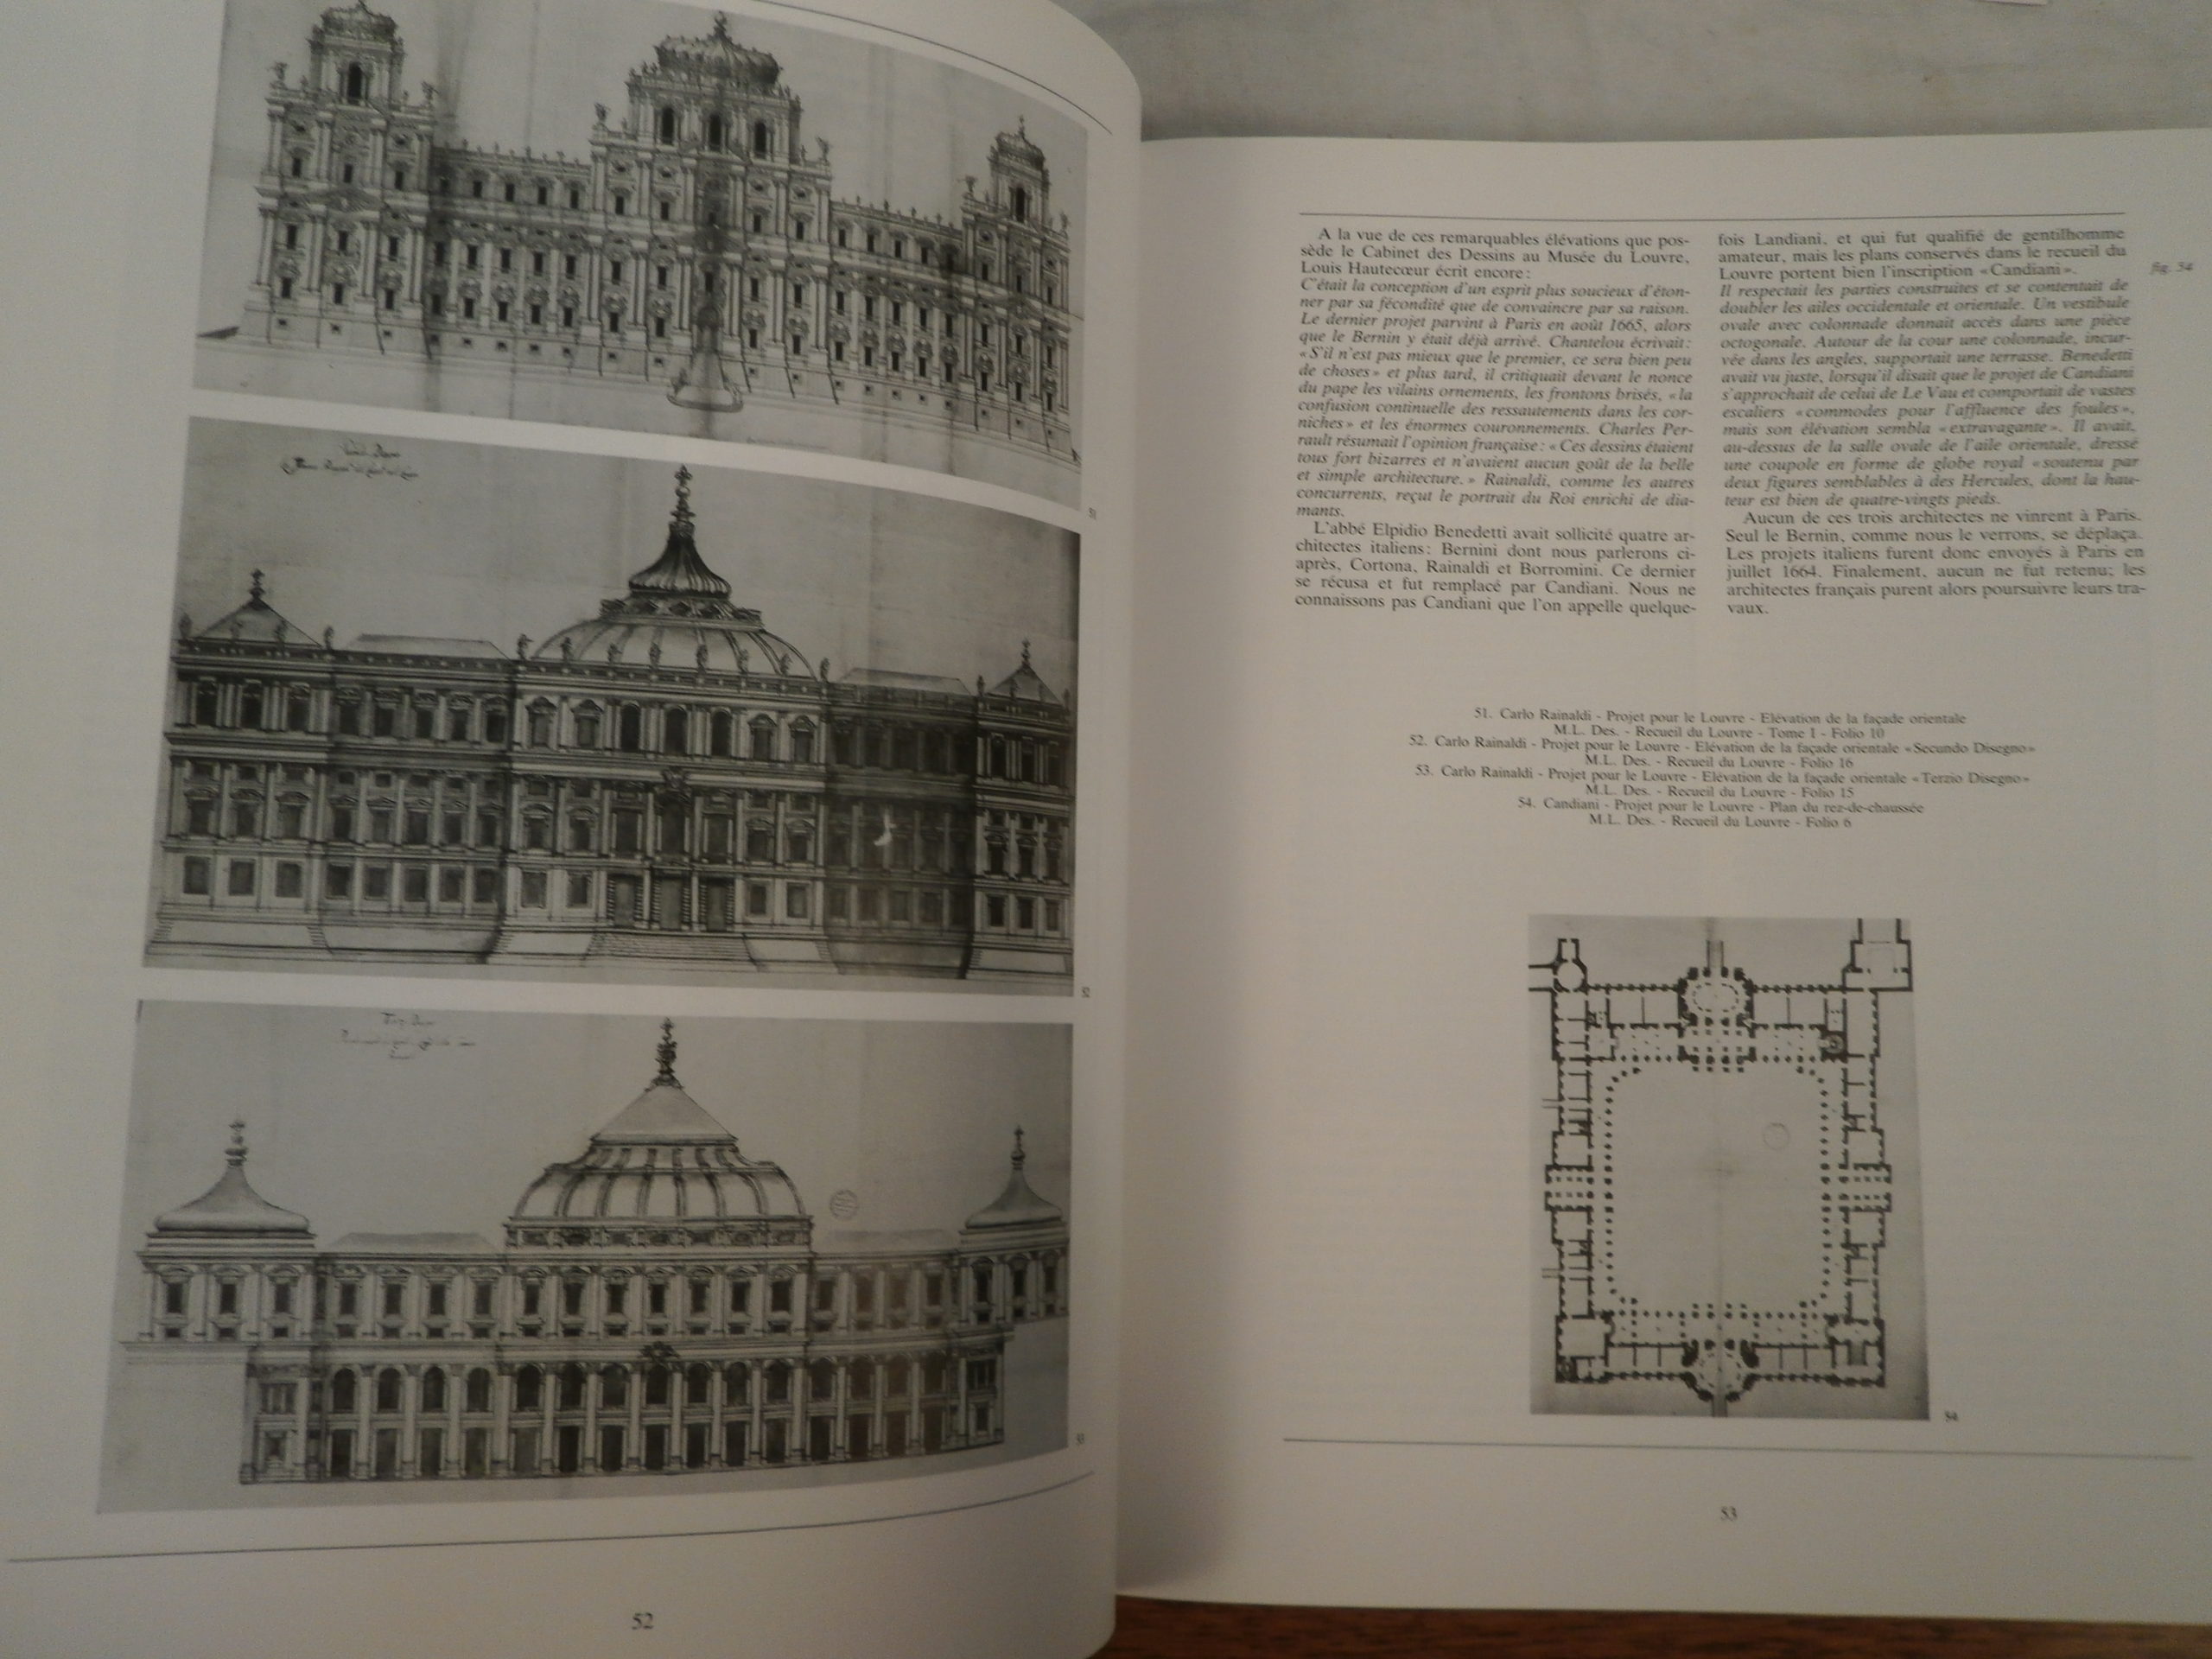 Louvre et Tuileries, Architectures de Papier, Jean- Claude Daufresne